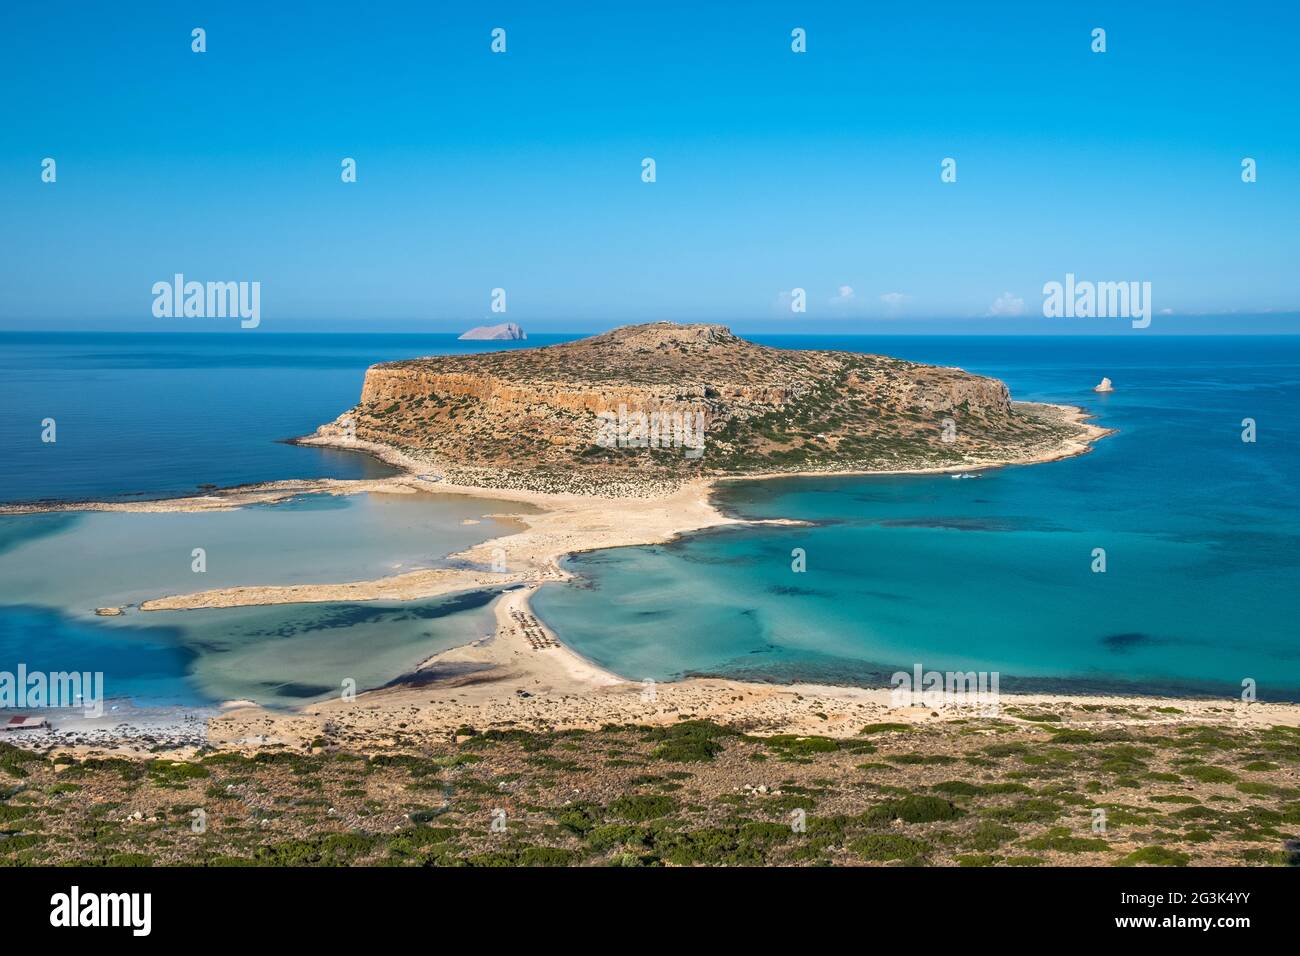 Spektakulärer Ausblick auf die Lagune von Balos auf der griechischen Insel Kreta Foto Stock